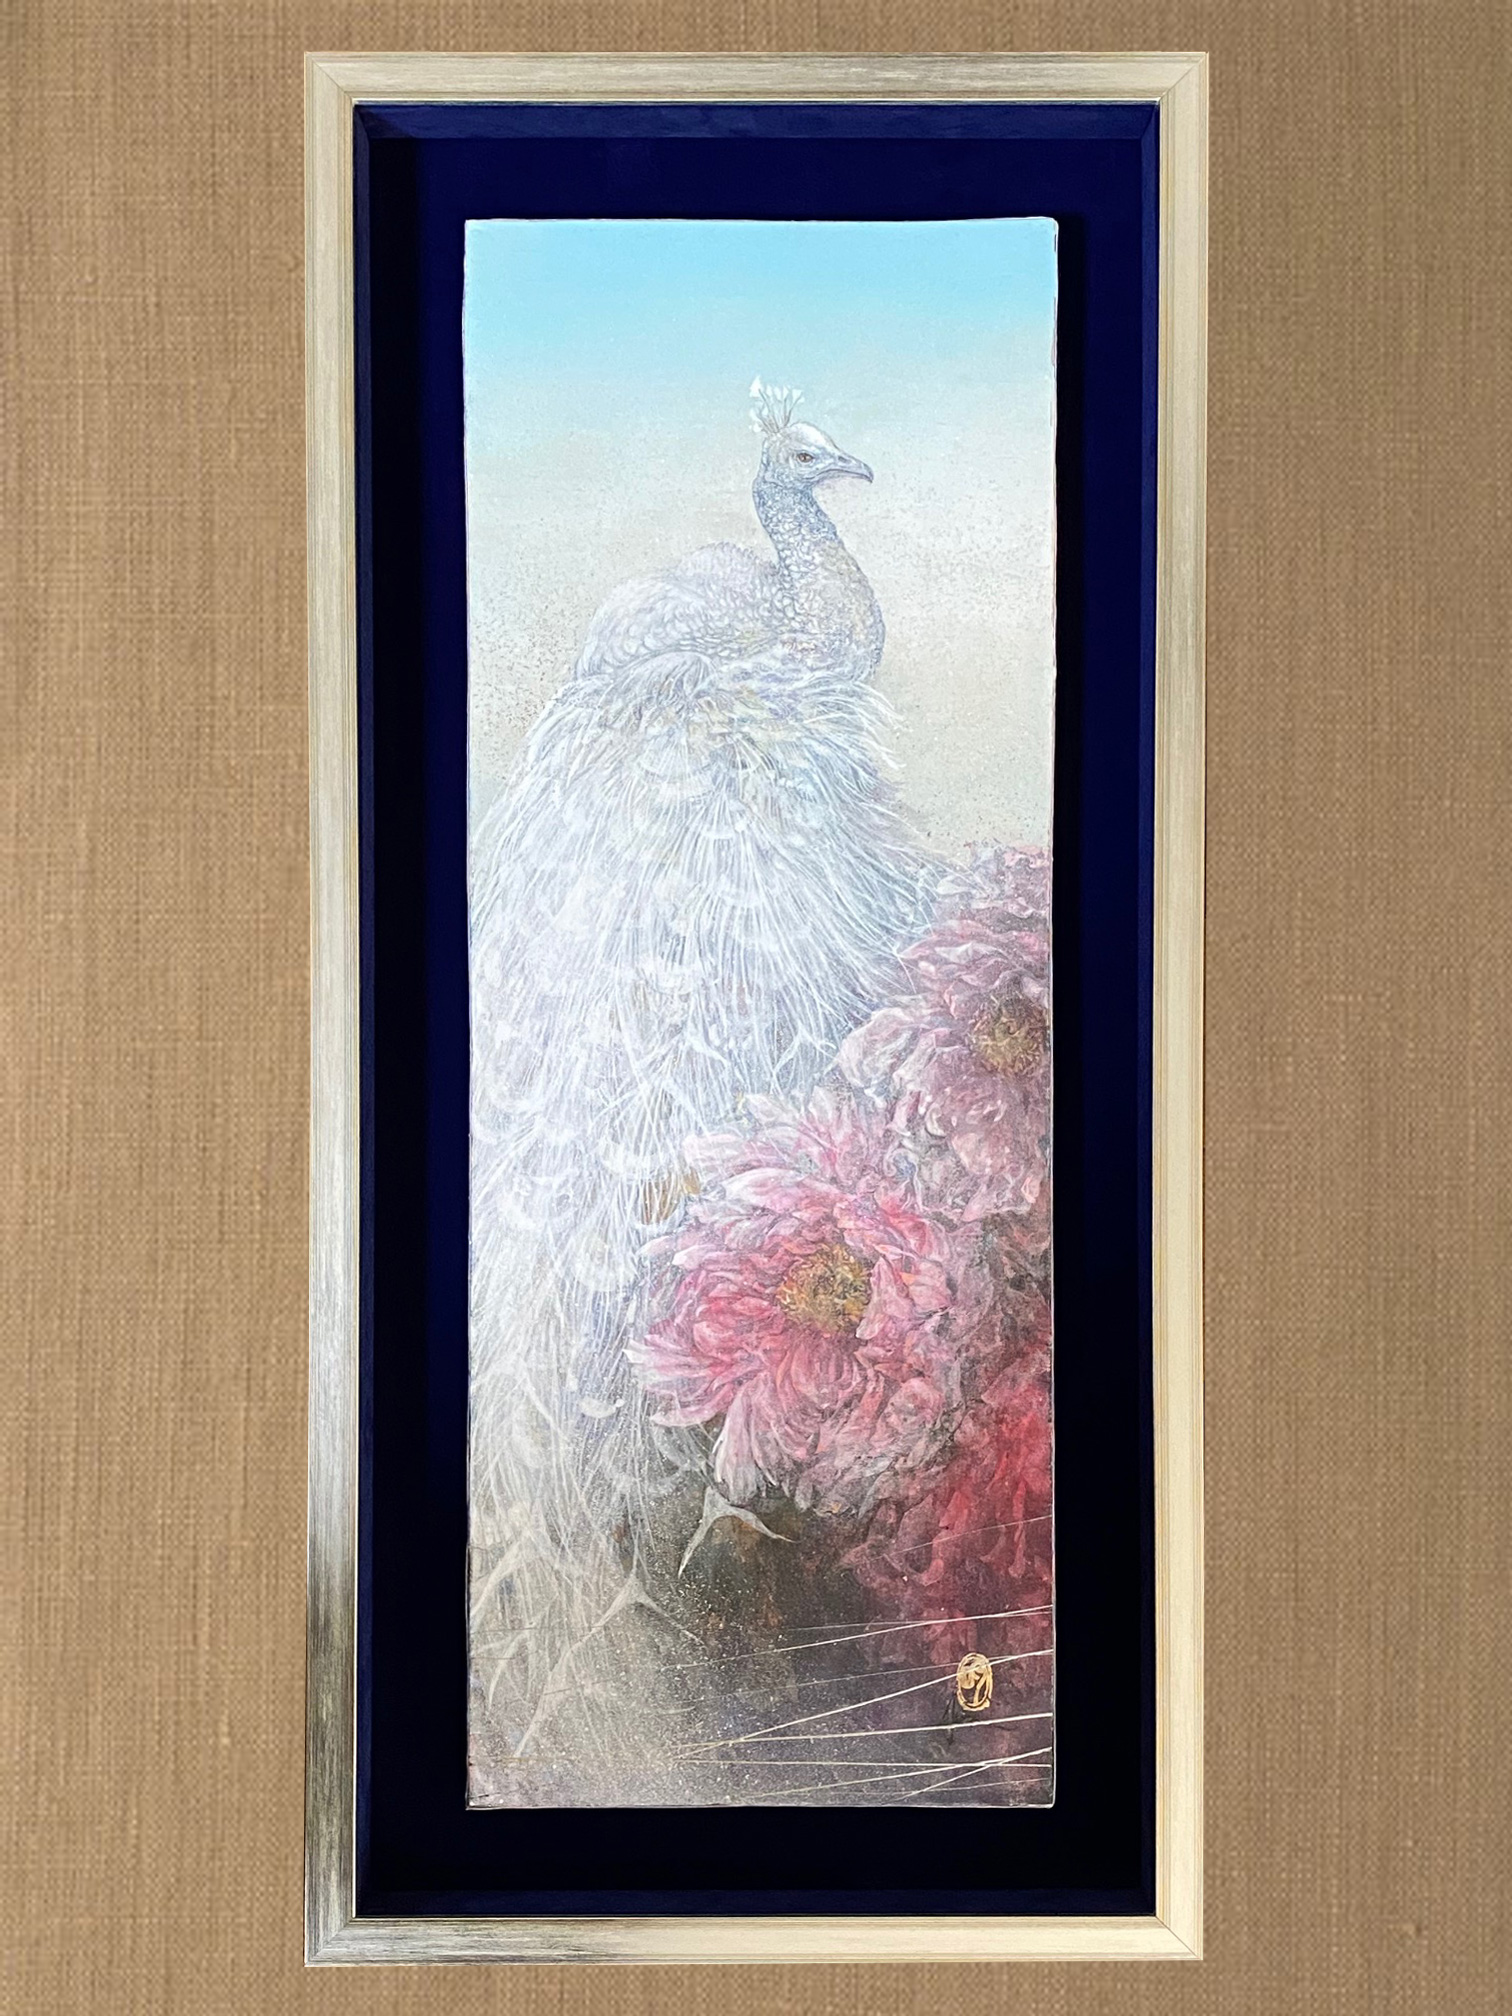 銀箔箱型額(青木秀明先生)｜銀箔ボックス額(箱額)バックは紺のスェード。日本画をシンプルでスタイリッシュな額装にしました。白孔雀と花が縦長に描かれた独特の構図は未来の日本画を担う青木秀明先生の作品です。